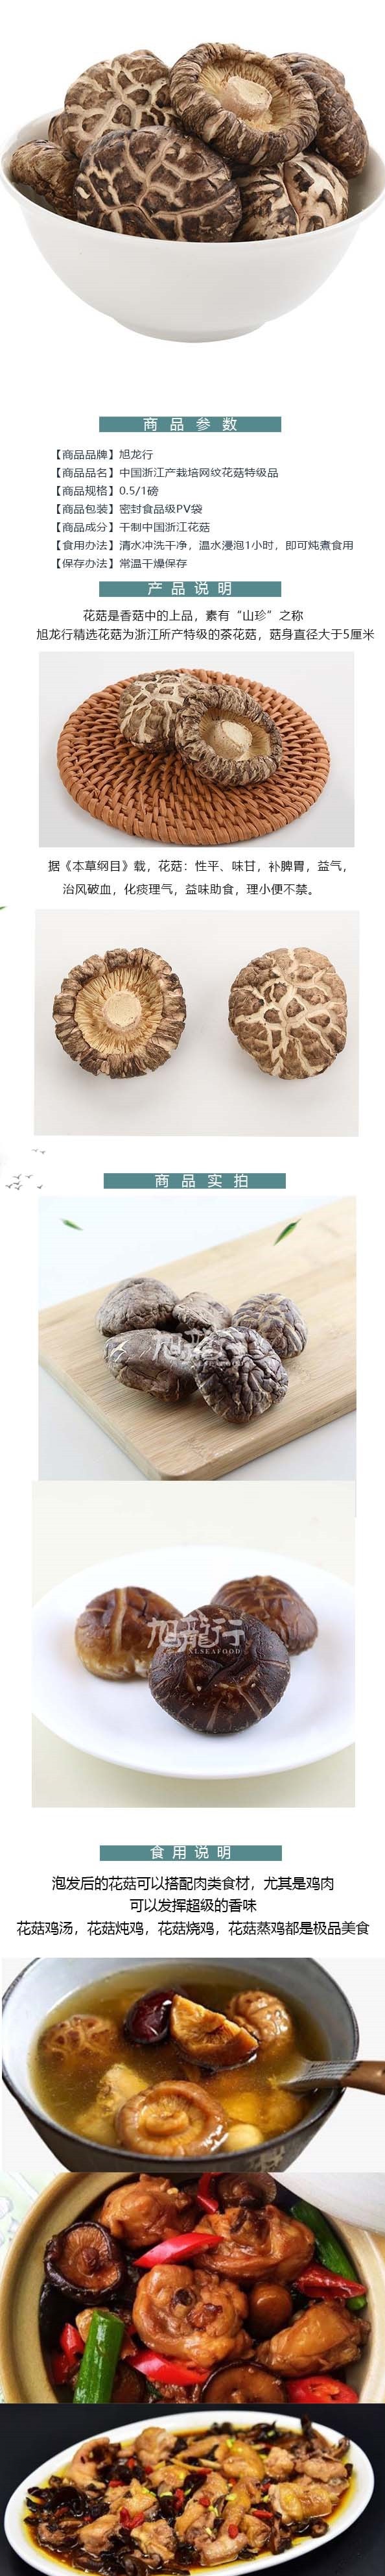 美國旭龍行特級韓式白花菇 中國產足幹網紋花菇 454公克 16oz